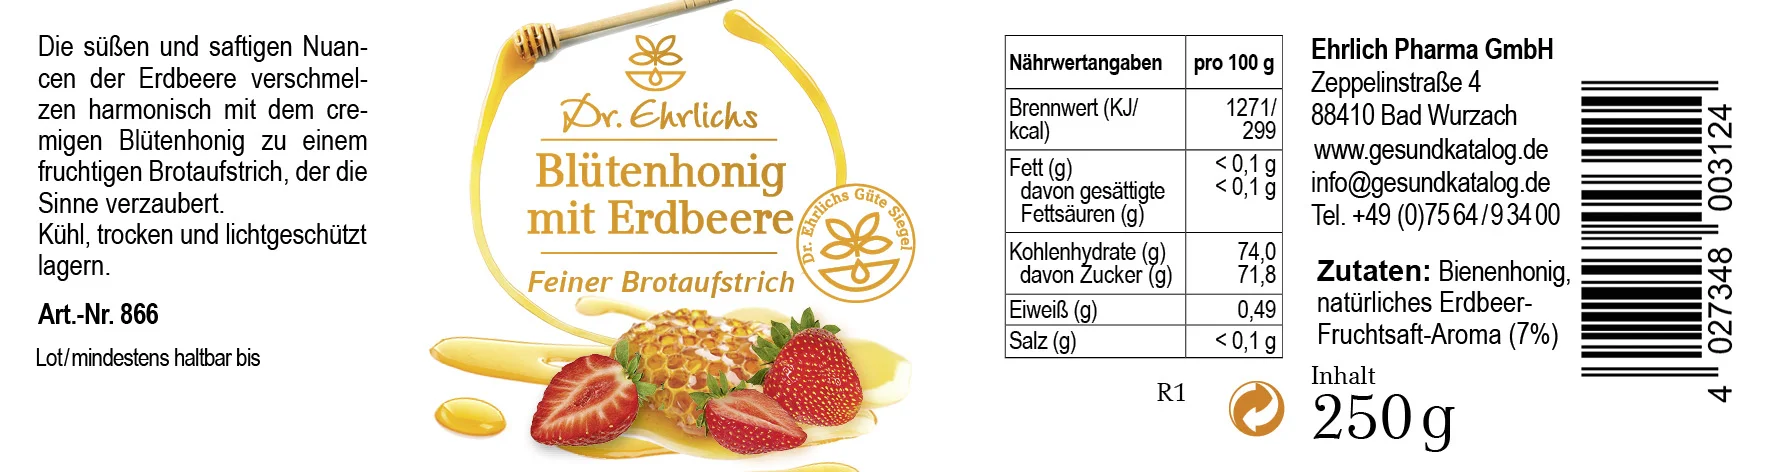 Etikett von Dr. Ehrlichs Erdbeere in Honig - Blütenhonig mit Erdbeere